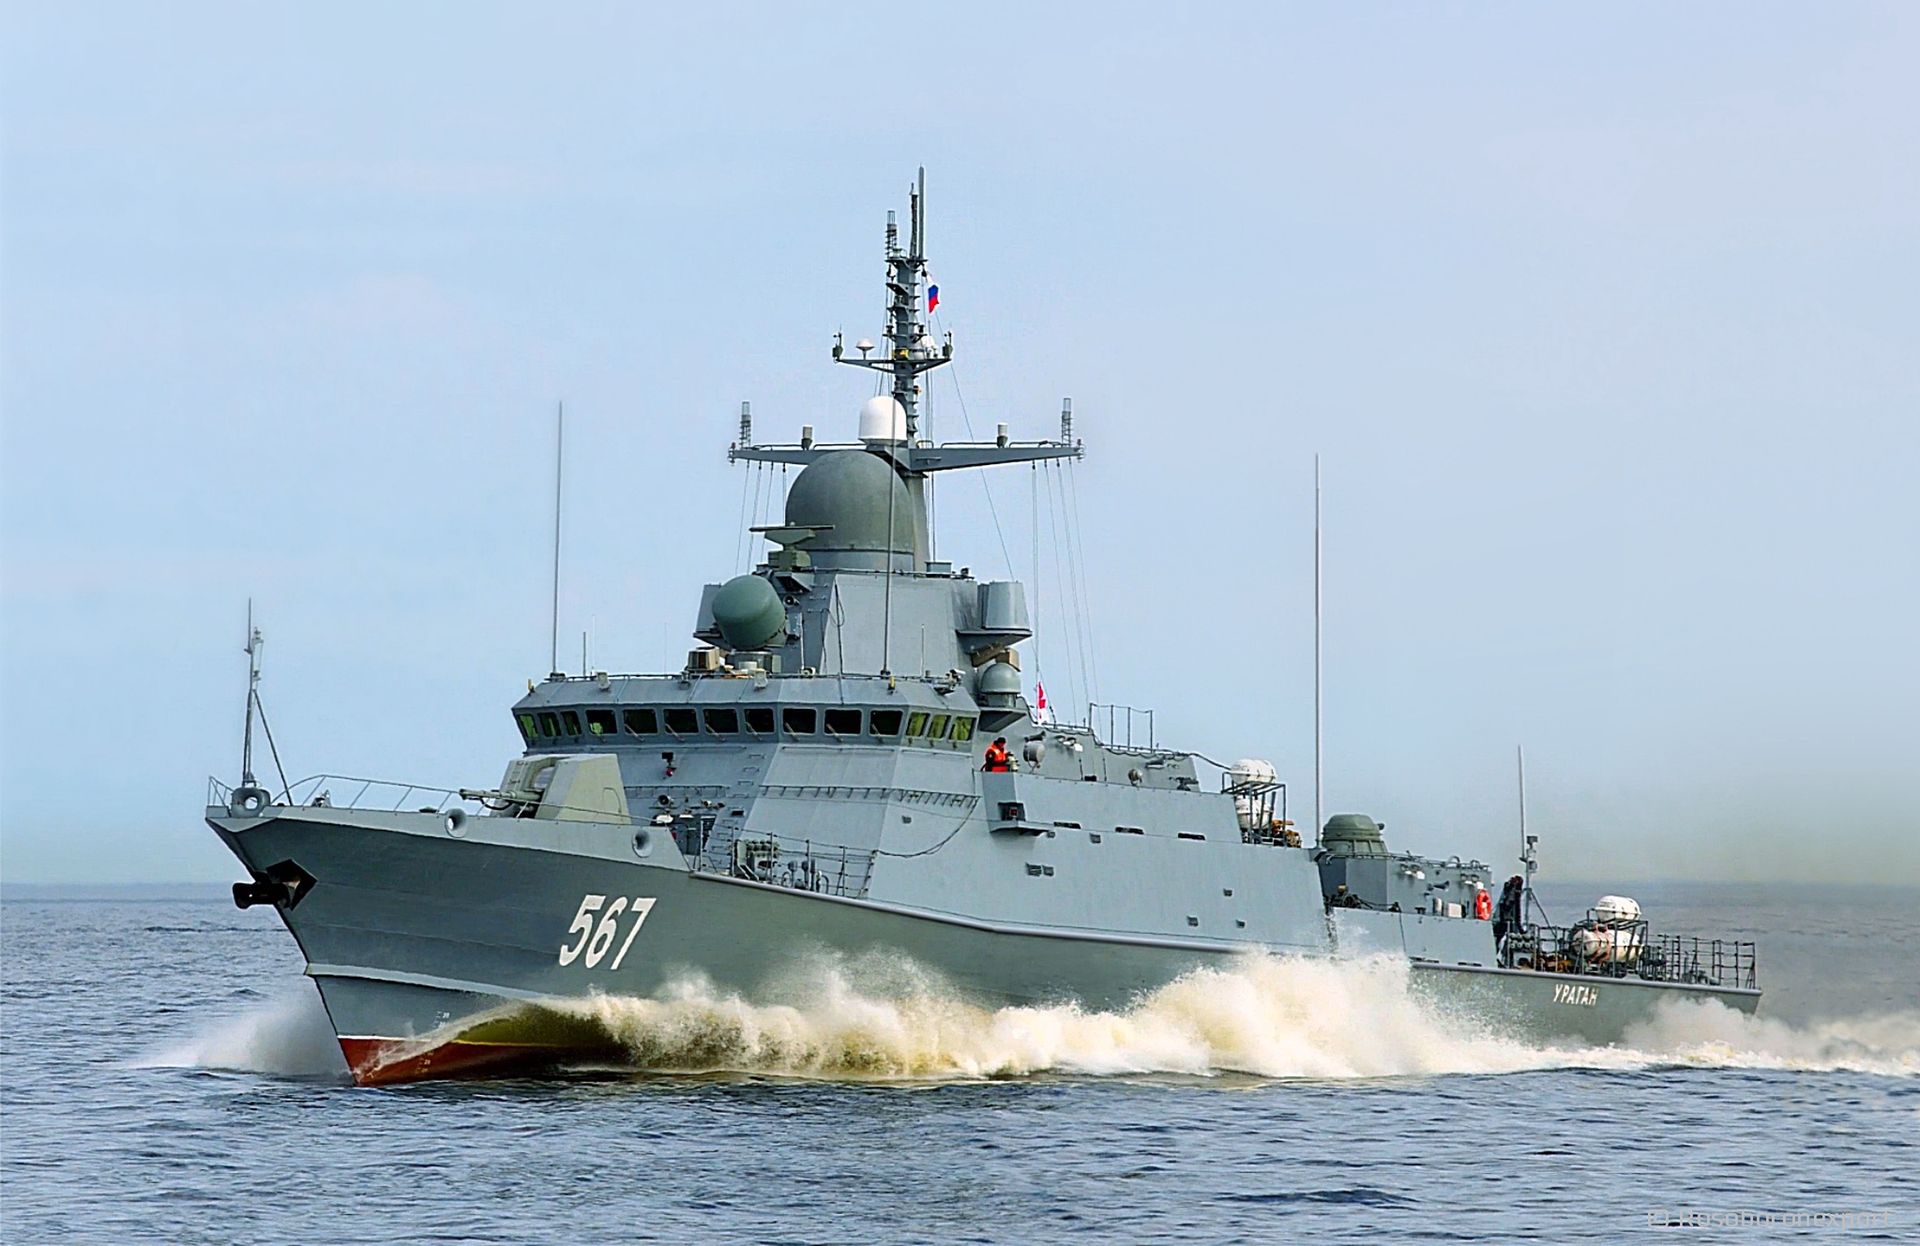 rosyjski okręt tucza zniknął z morza czarnego. odnalazł się na innym akwenie